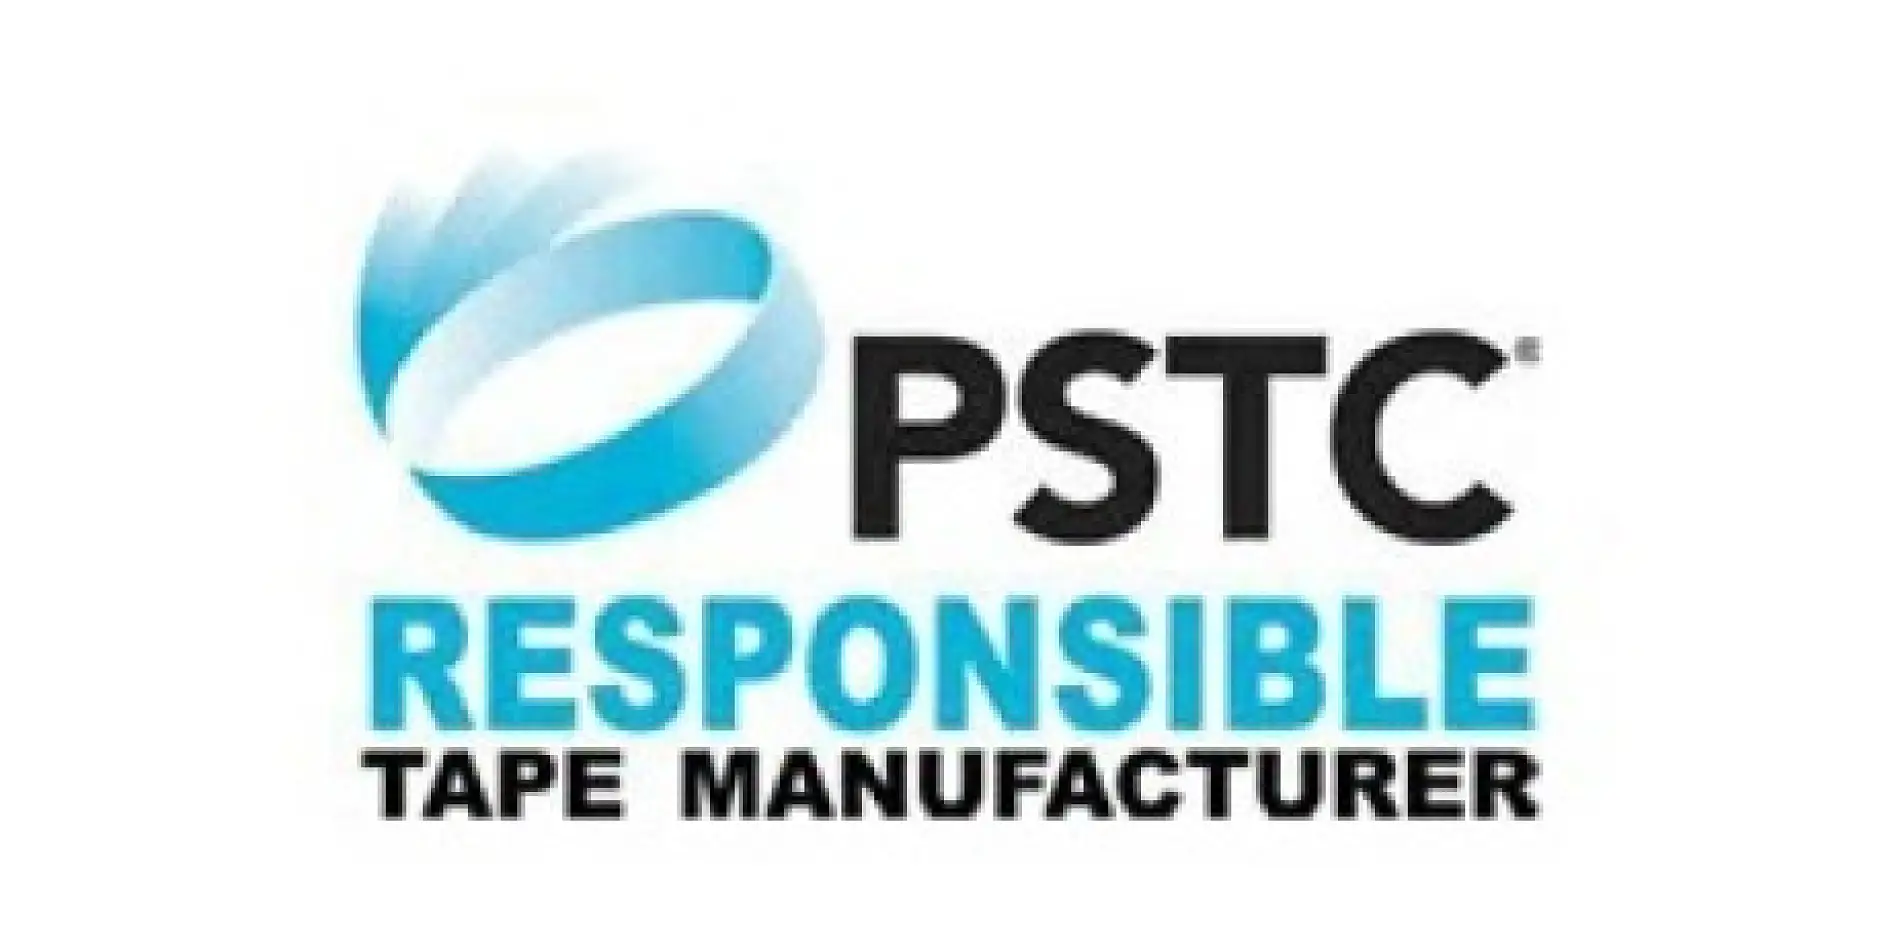 La Pressure Sensitive Tape Council (PSTC) è un’associazione commerciale nordamericana non-profit istituita 60 anni fa che raccoglie i produttori di nastri adesivi e relativi fornitori. Si occupa di aiutare il settore a produrre nastri autoadesivi di qualità sul mercato globale.